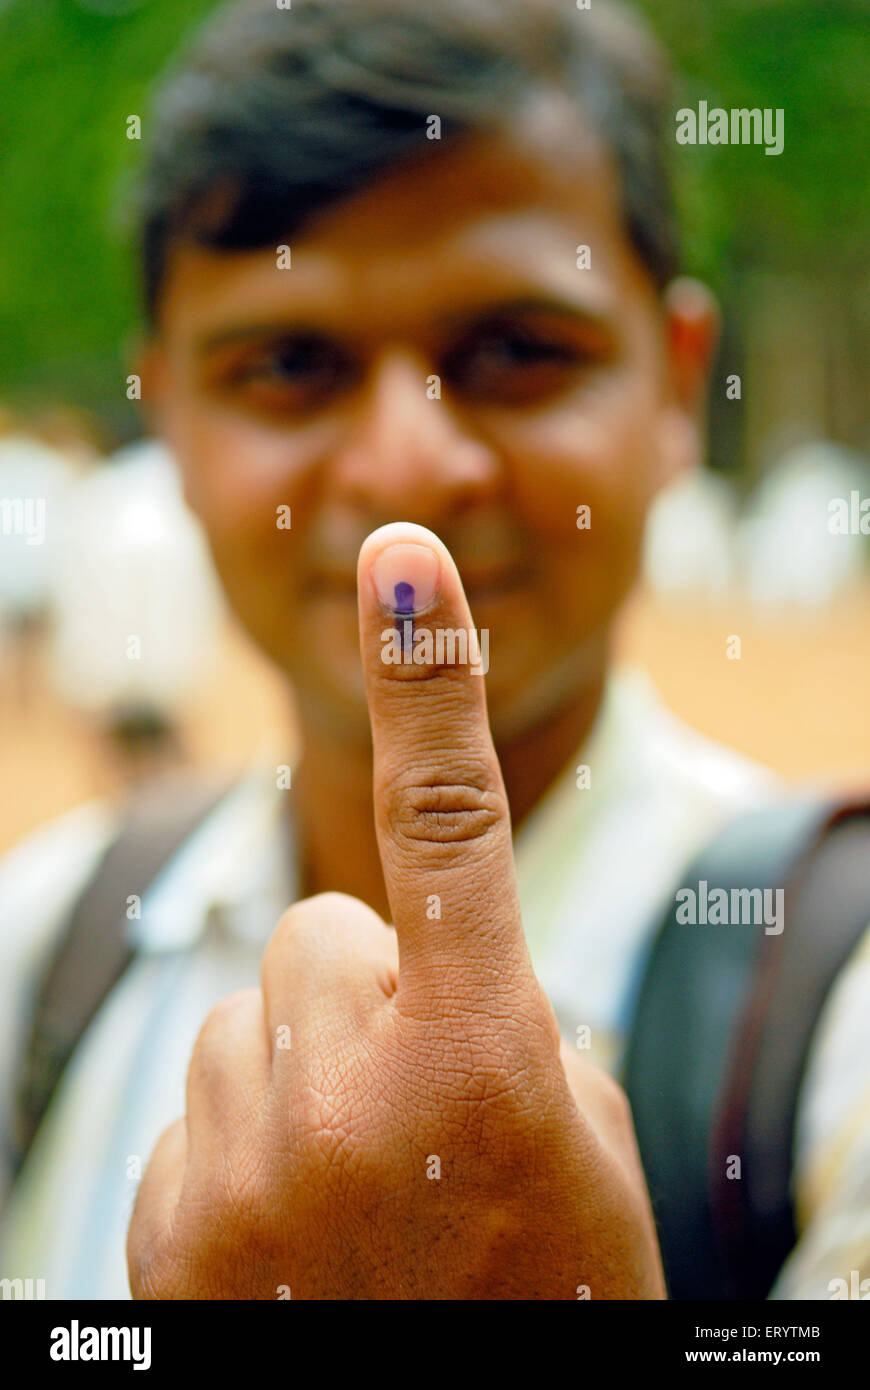 Indische Wahlen, Finger mit unauslöschlicher Tinte Markierung nach der Abstimmung in indischen Wahlen, Bombay, Mumbai, Maharashtra, Indien, Asien Stockfoto